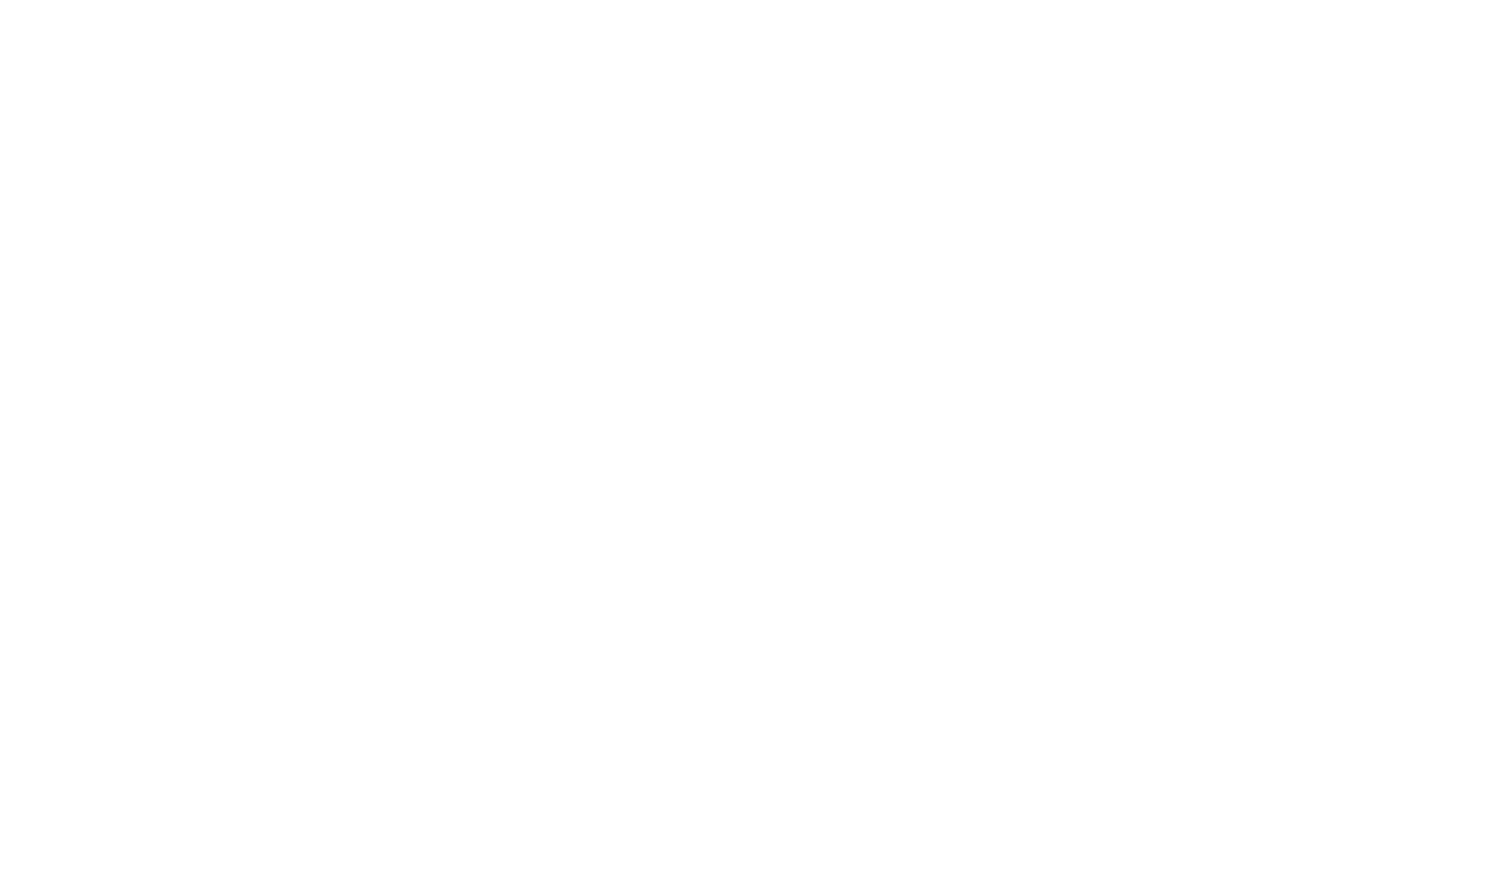 Awamary Lowe-Khan